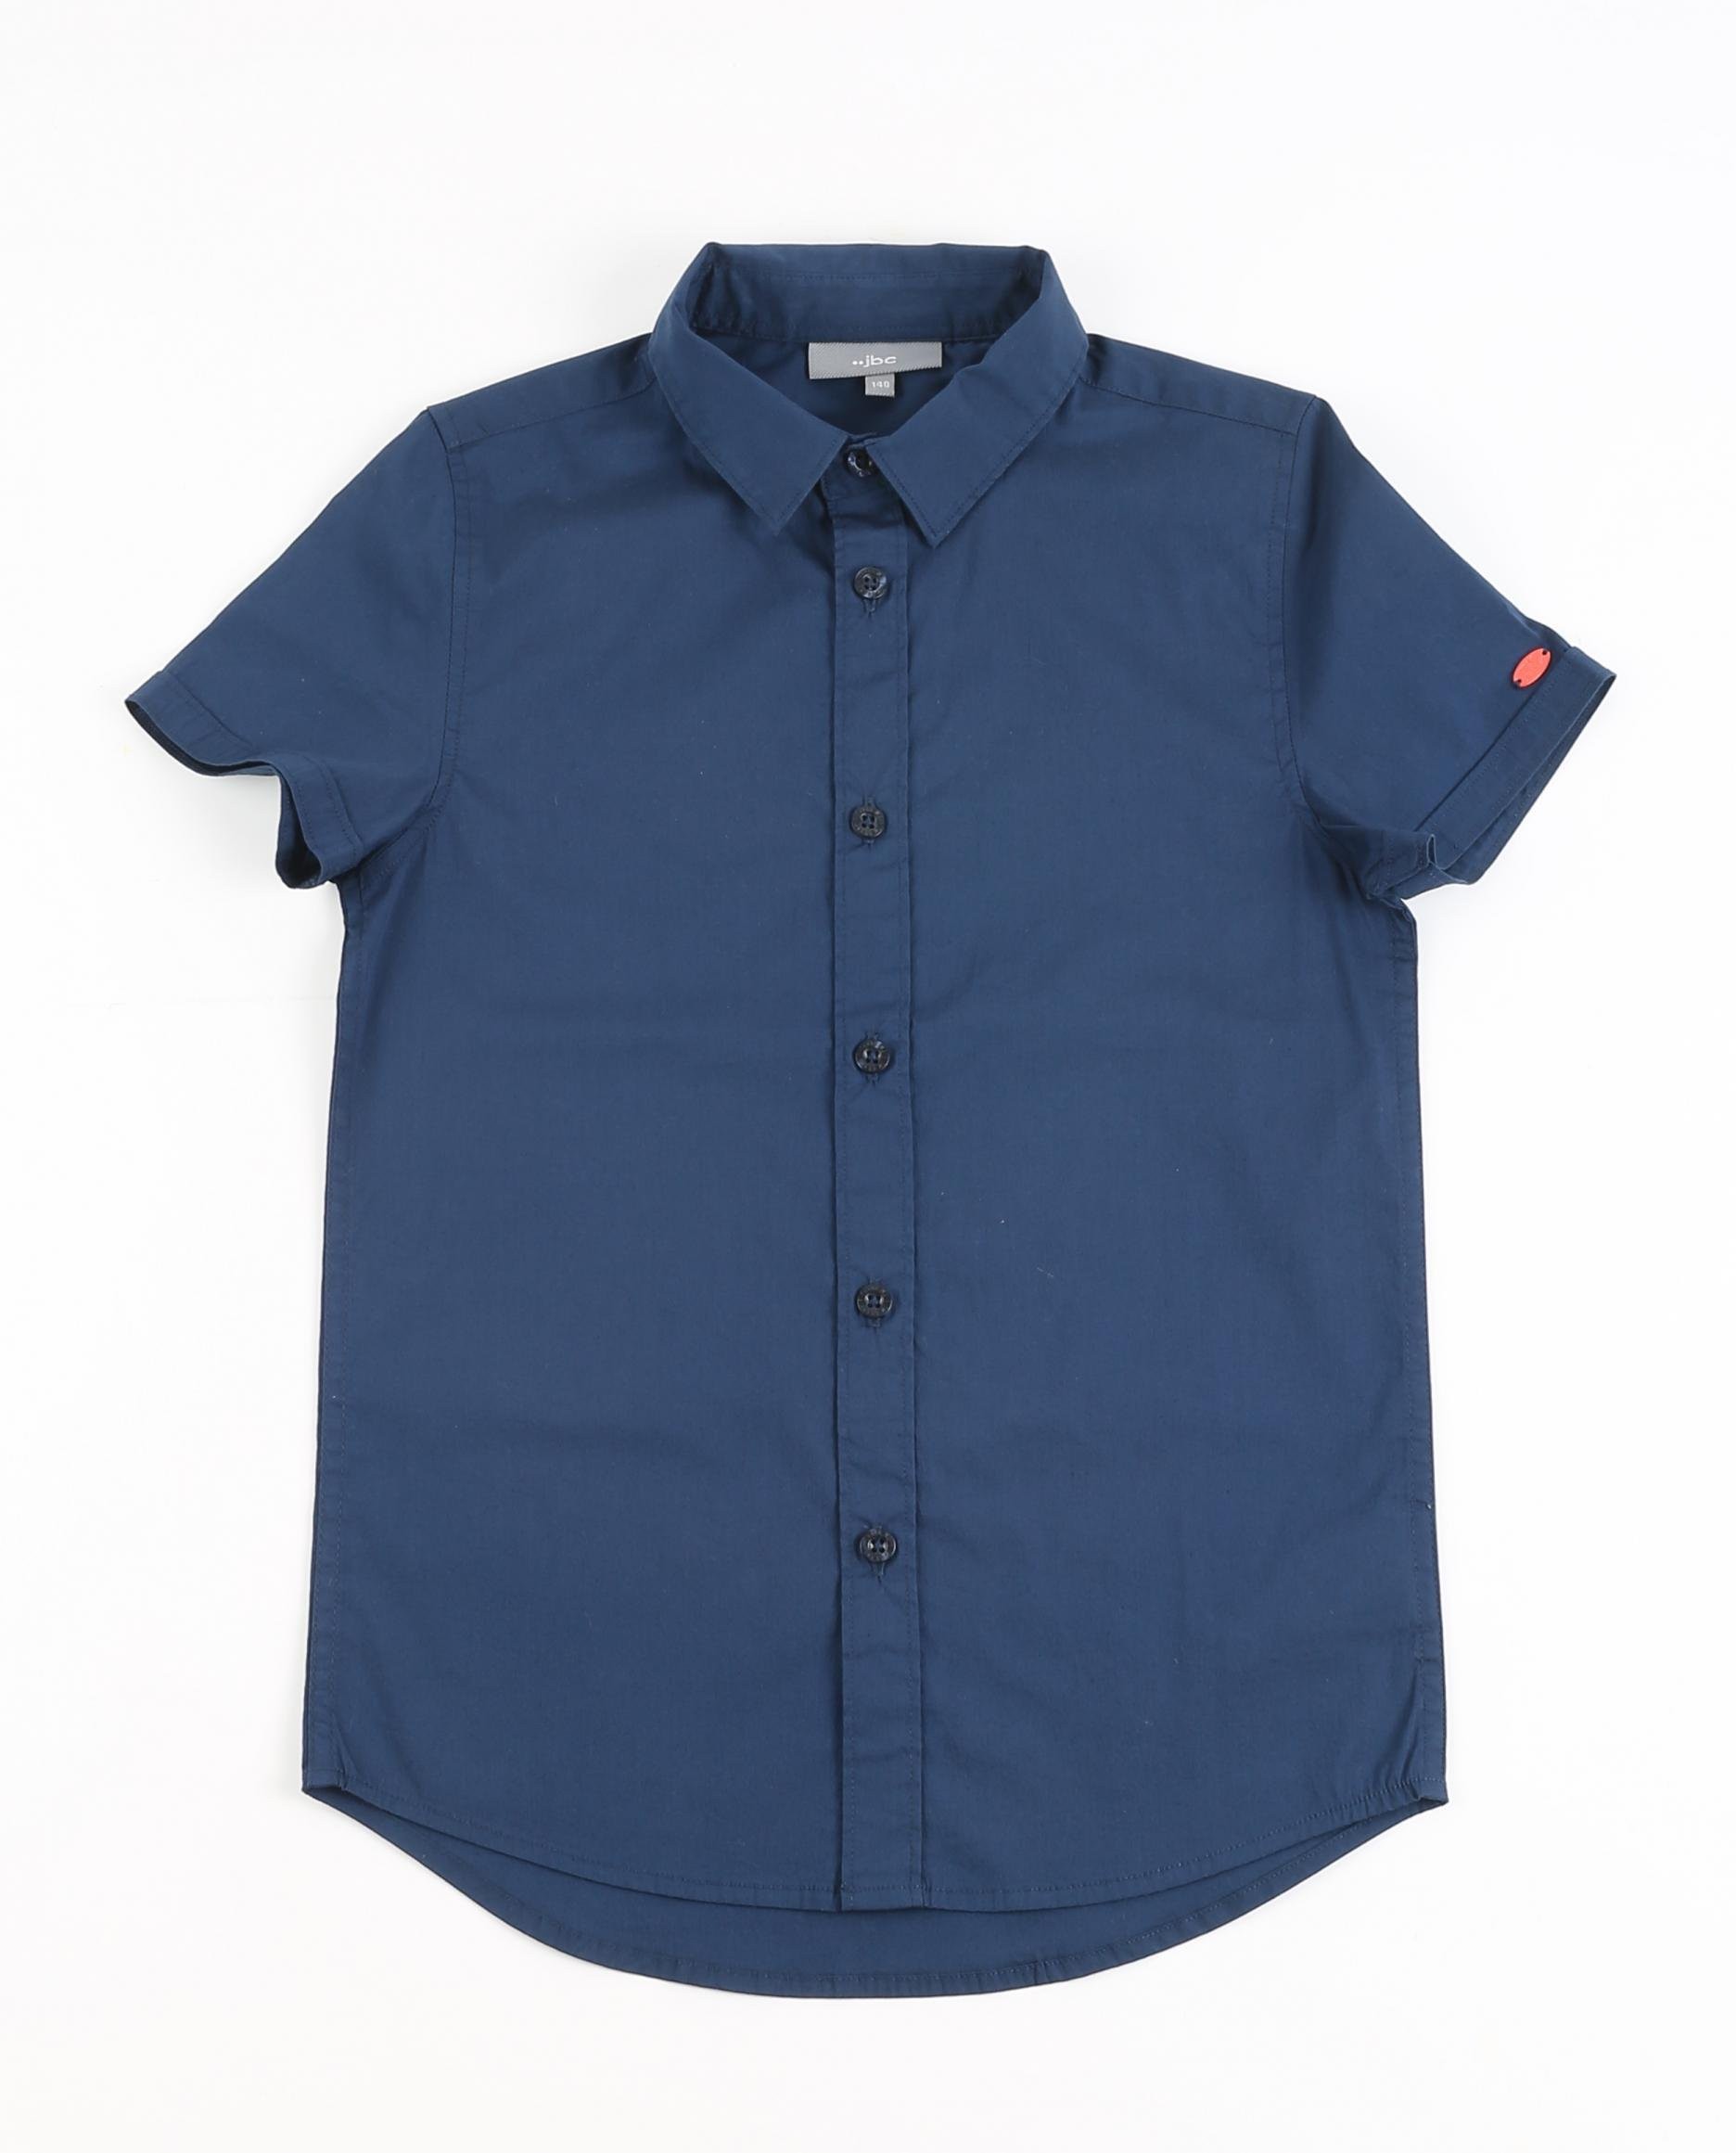 Marineblauw hemd - met korte mouwen - JBC